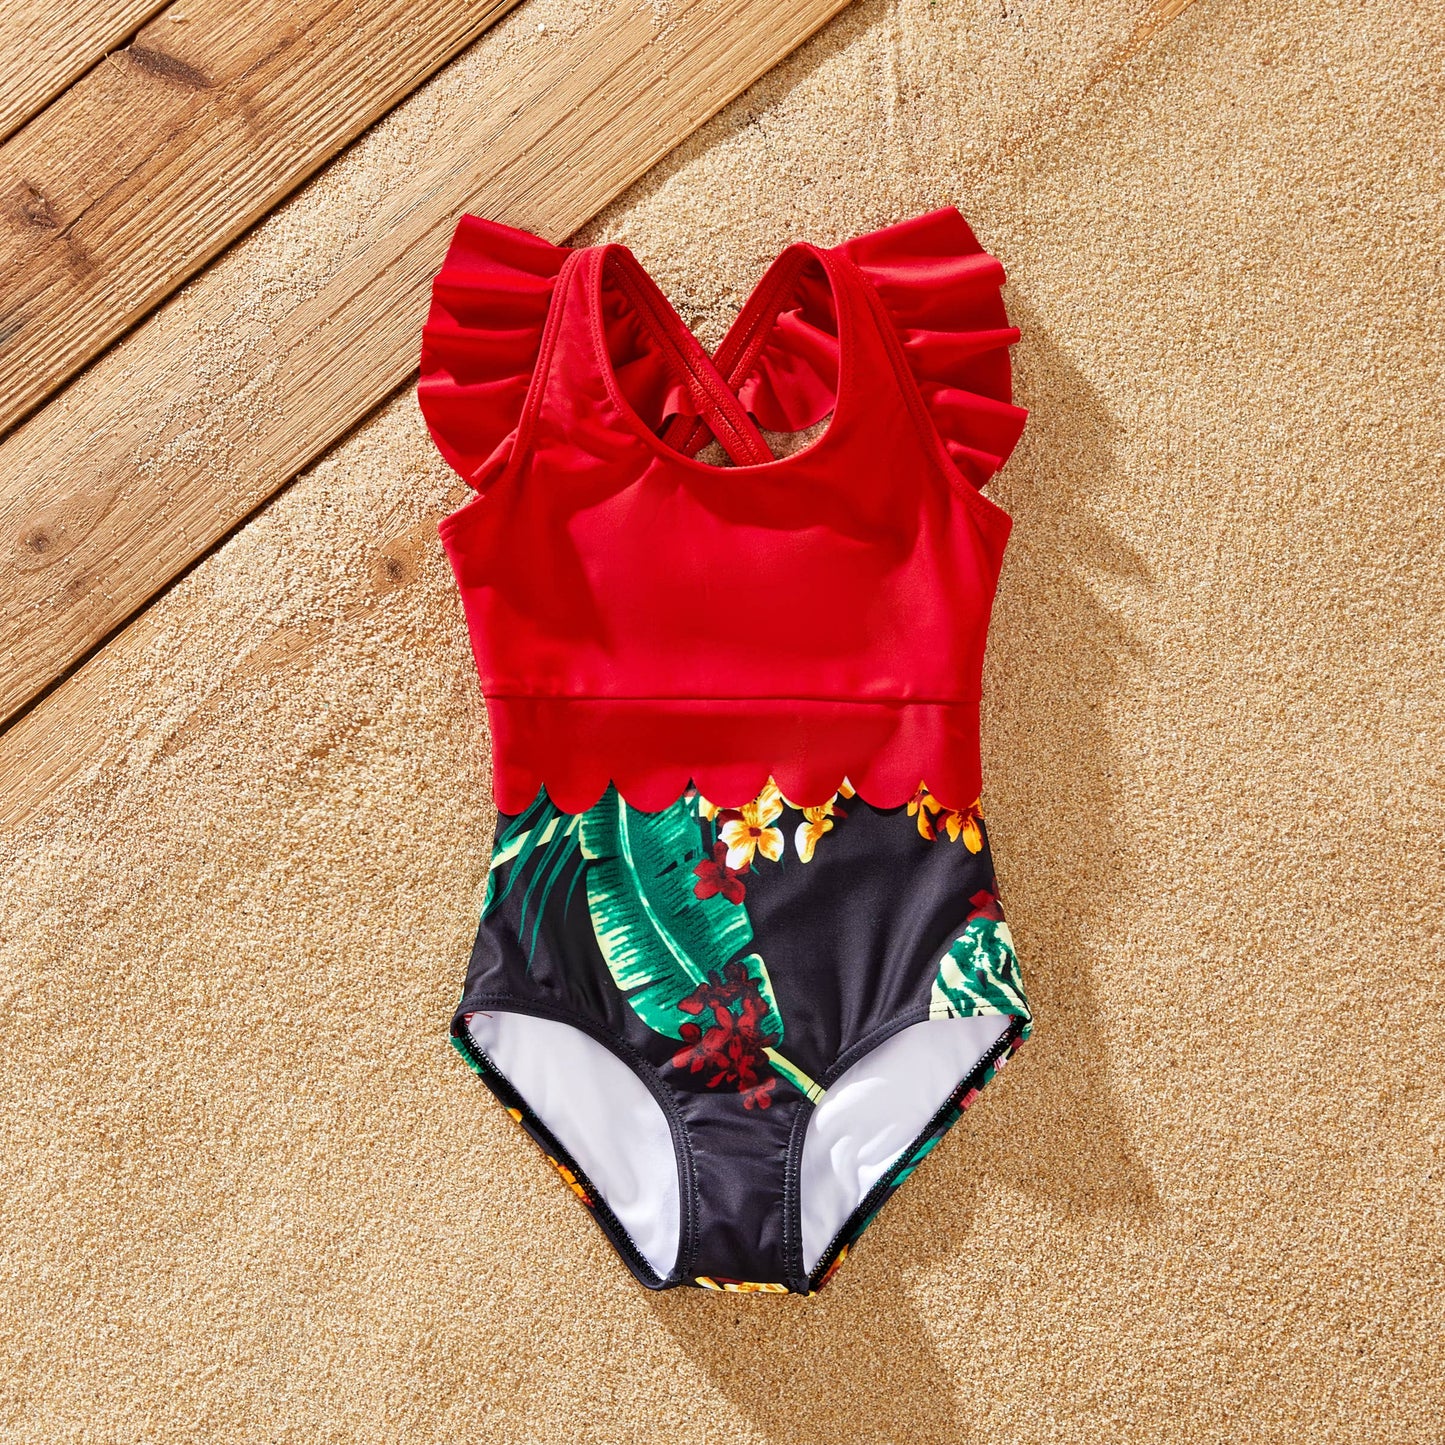 Swim Trunks or Red Halter Top Spliced Swimsuit